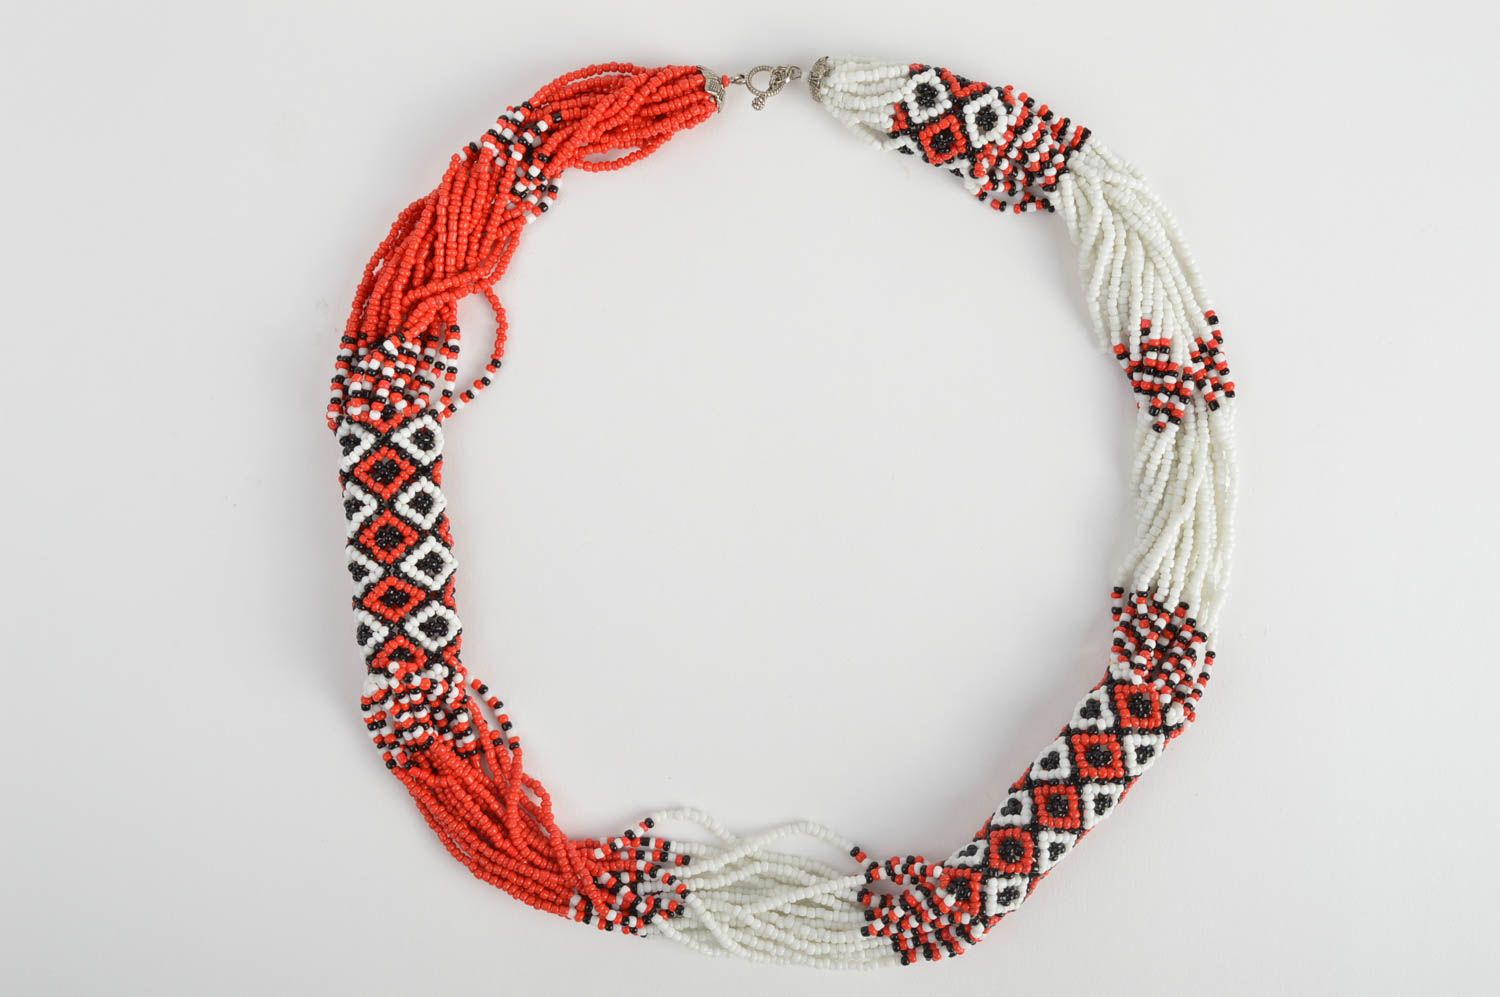 Ожерелье из бисера в виде жгута белое с красным и черным красивое ручной работы фото 2